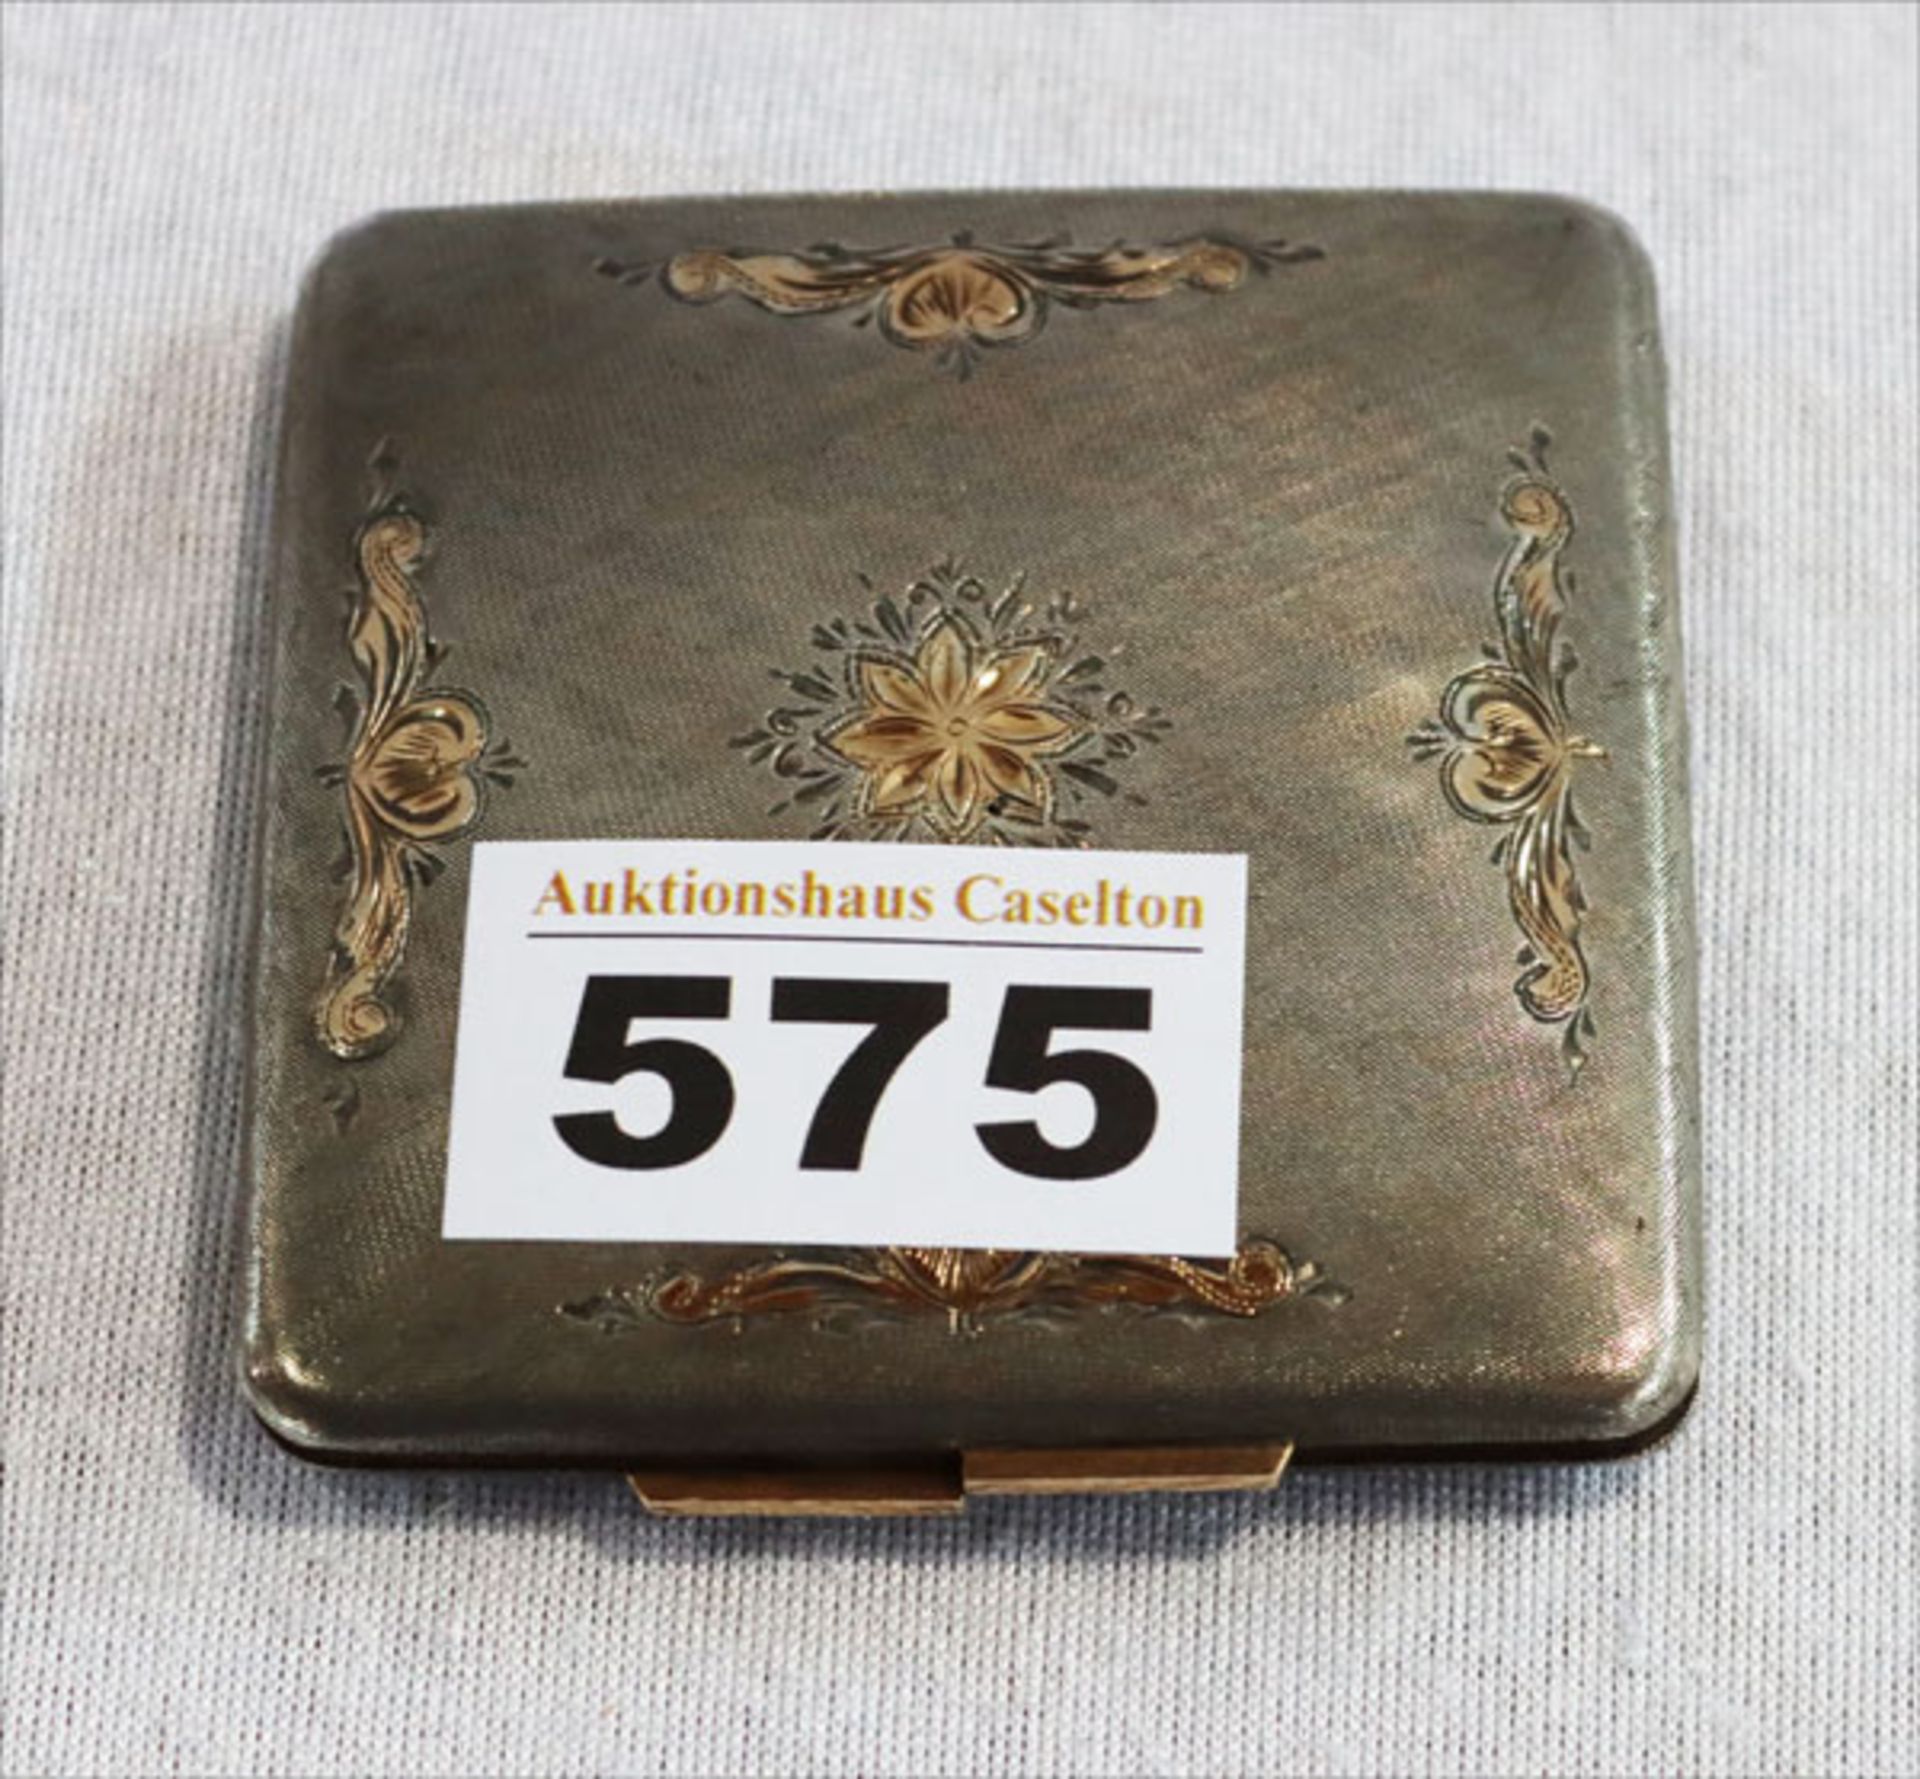 Puderdose, 925 Silber mit Gold-Verzierungen und Schließe, fein graviert, 92 gr., 7 cm x 7 cm,